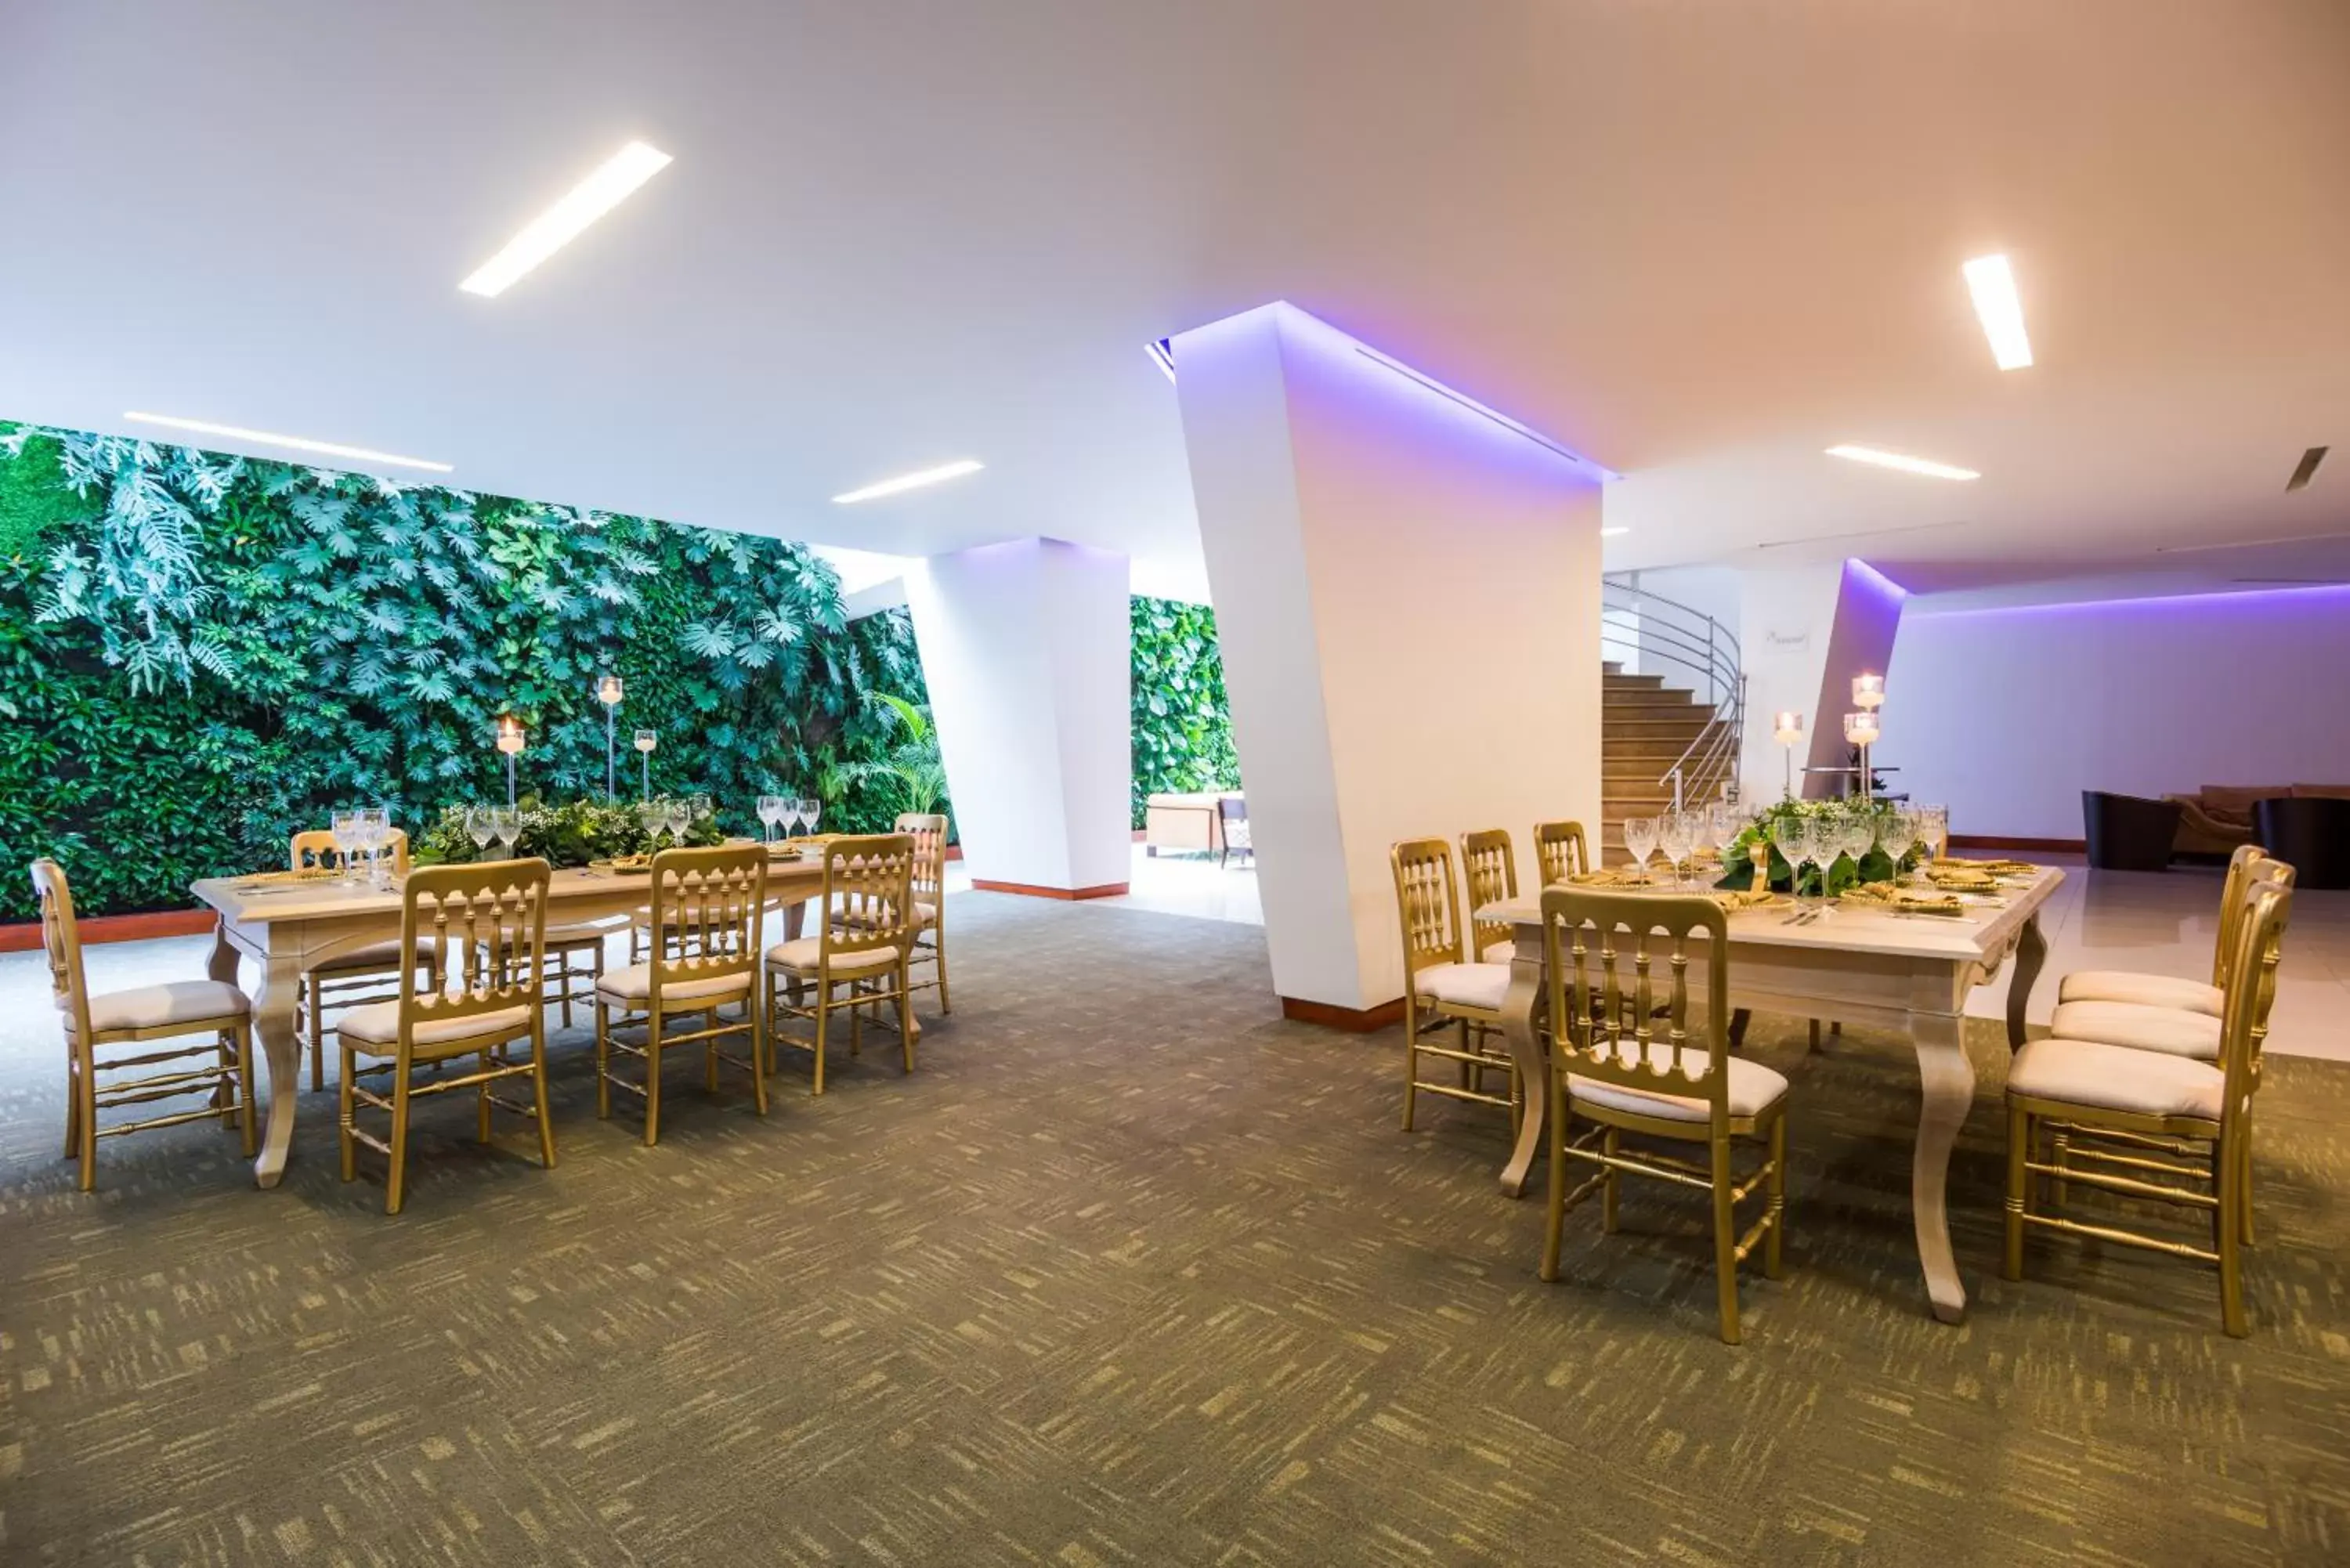 Lounge or bar, Restaurant/Places to Eat in Cosmos 100 Hotel & Centro de Convenciones - Hoteles Cosmos